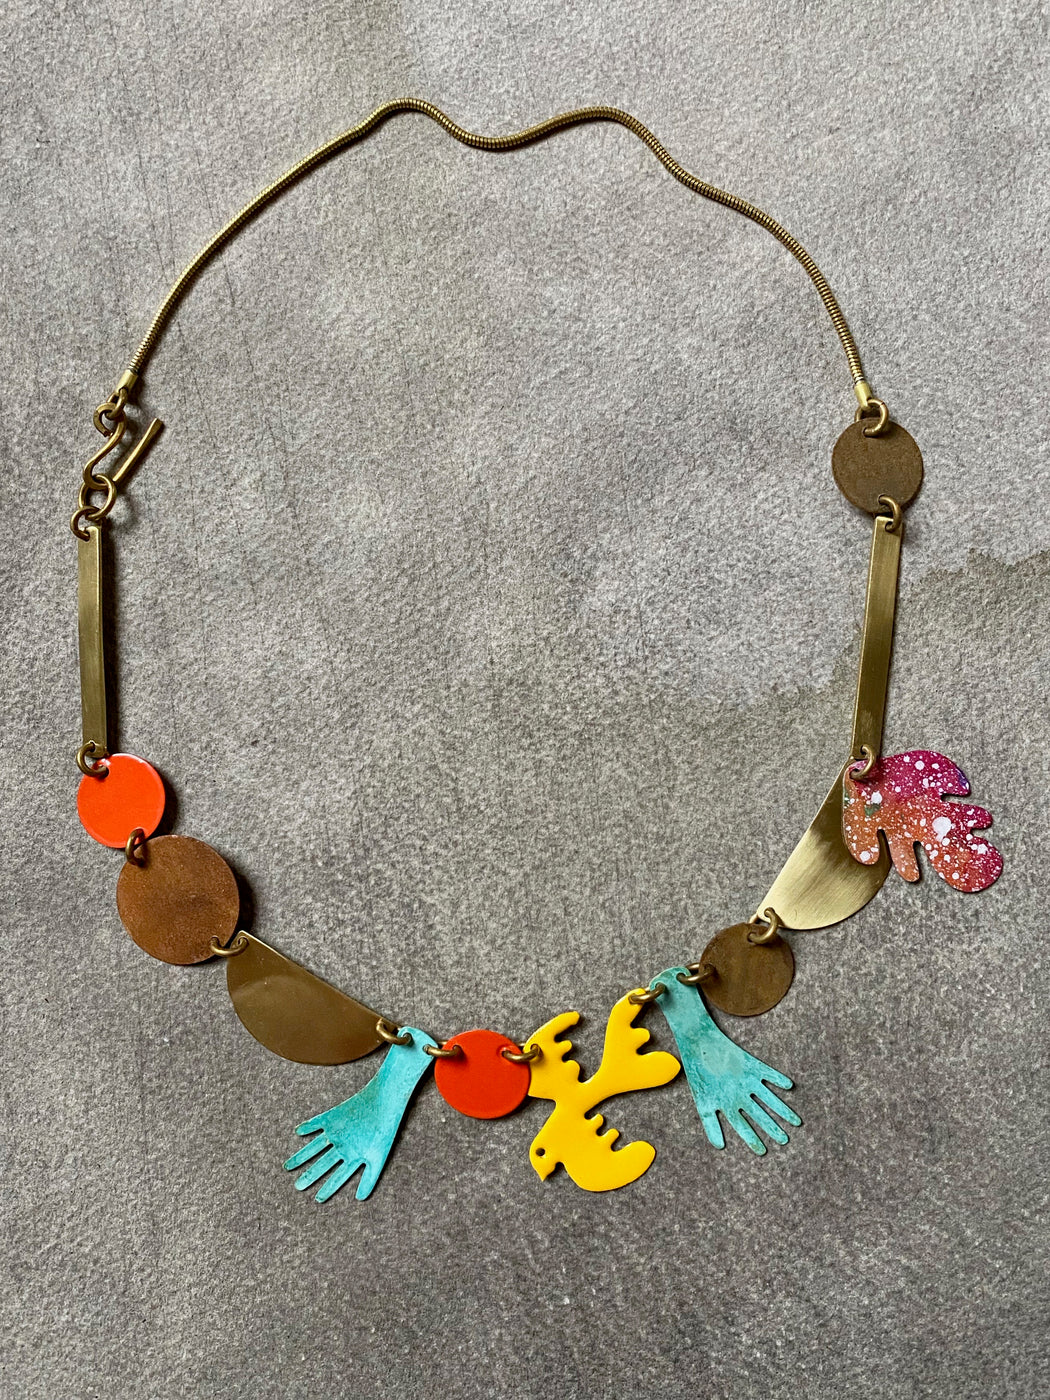 Sibilia "Fun" Necklace